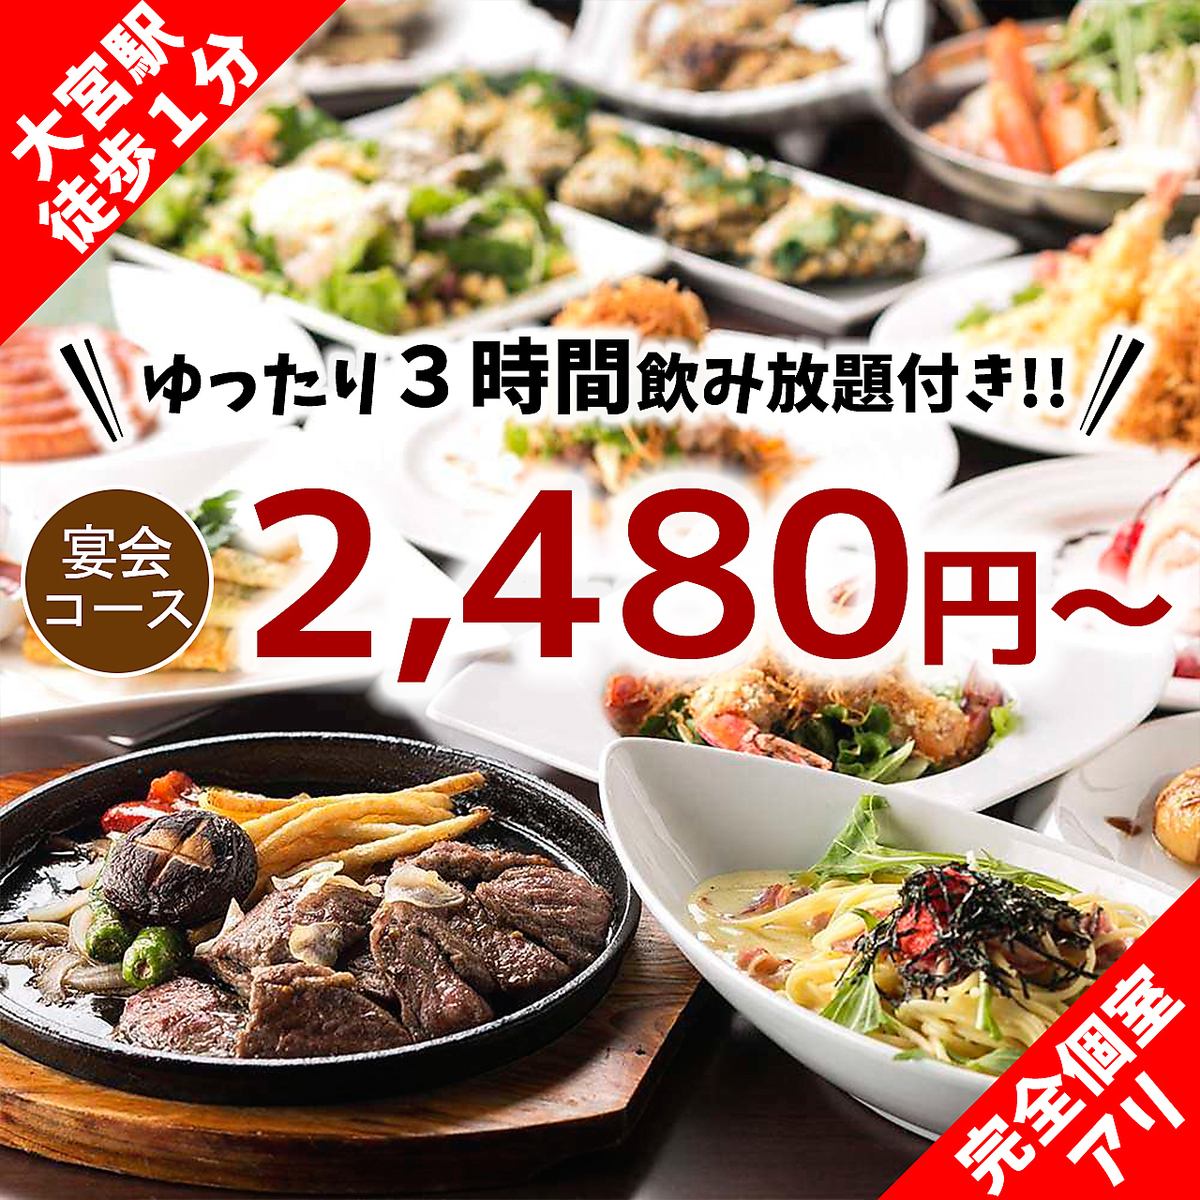 [大宮最低價] 2,480 日元起 3 小時無限暢飲宴會♪